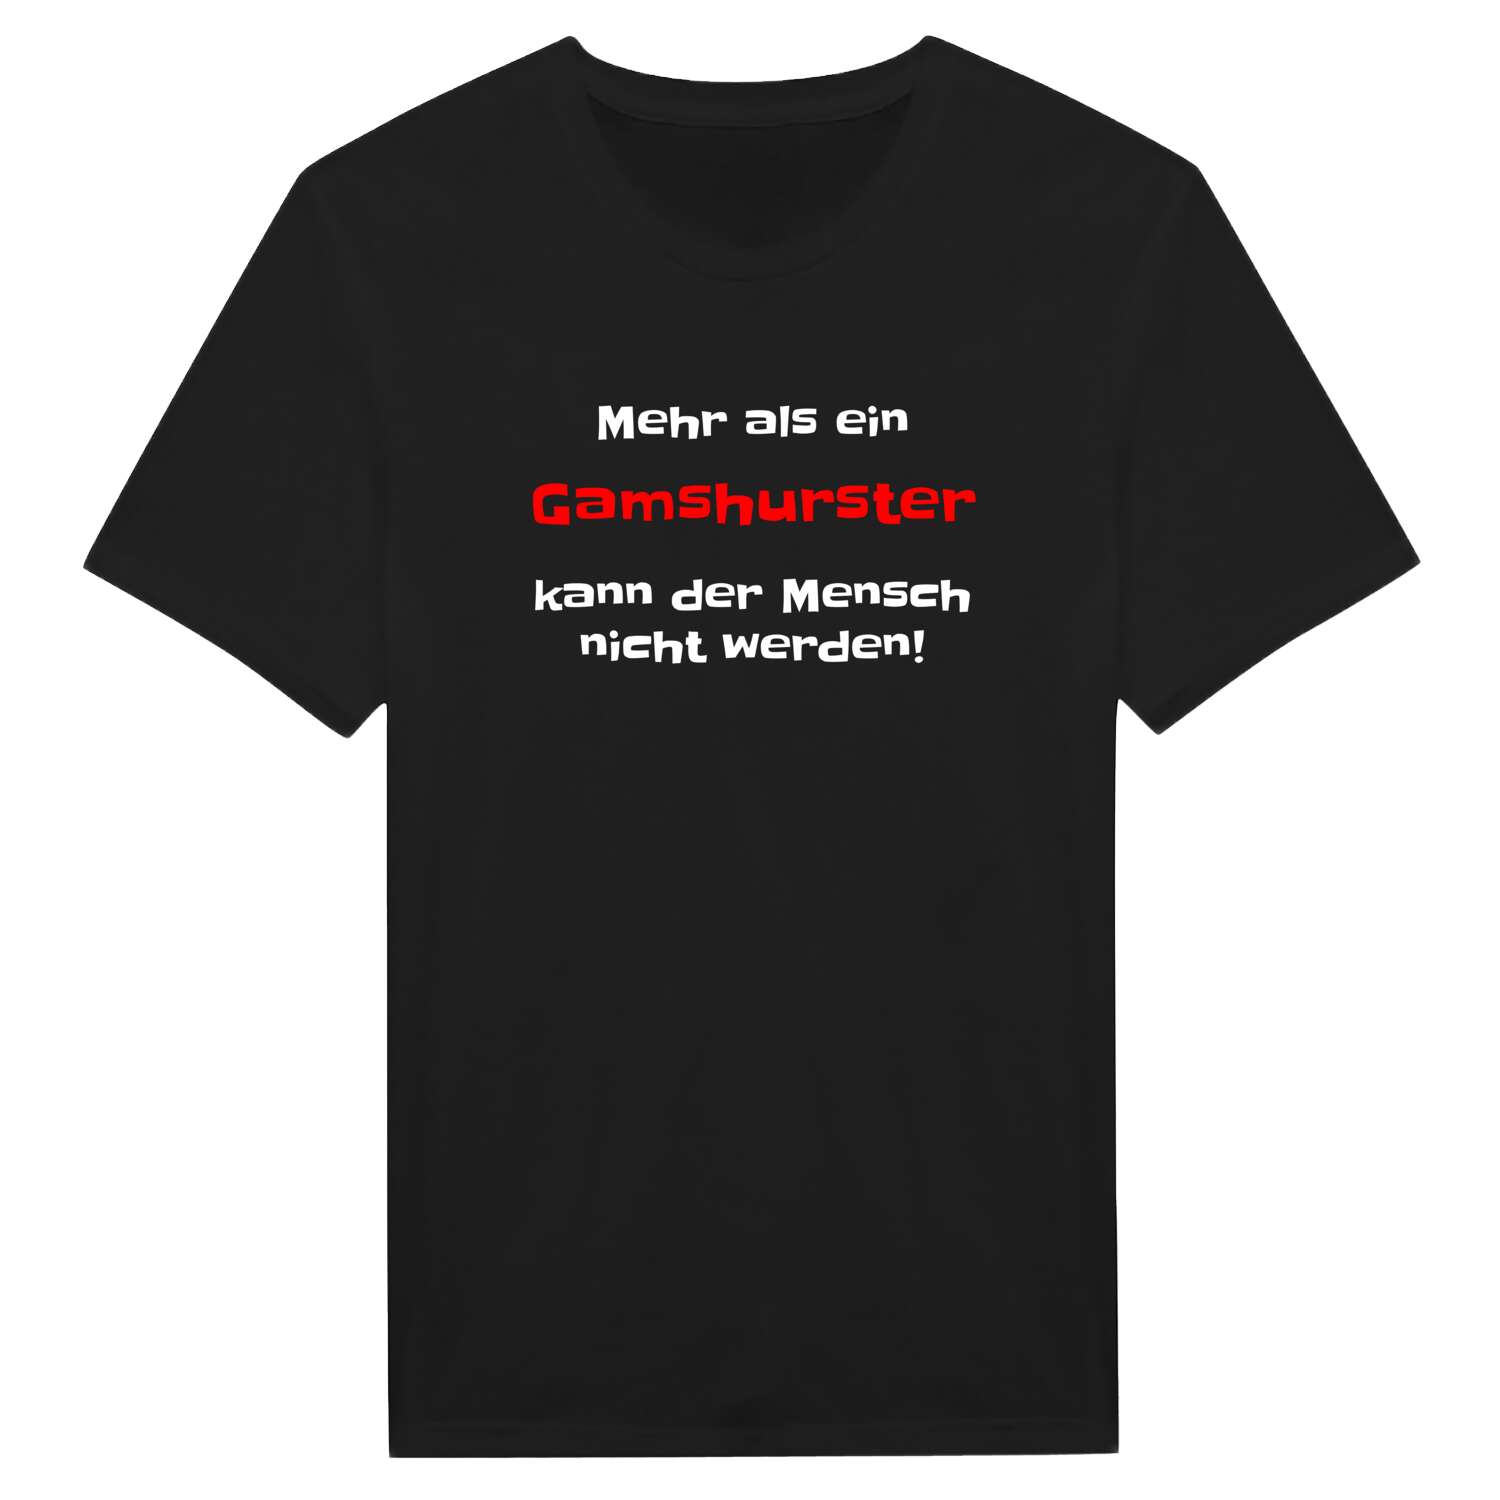 Gamshurst T-Shirt »Mehr als ein«